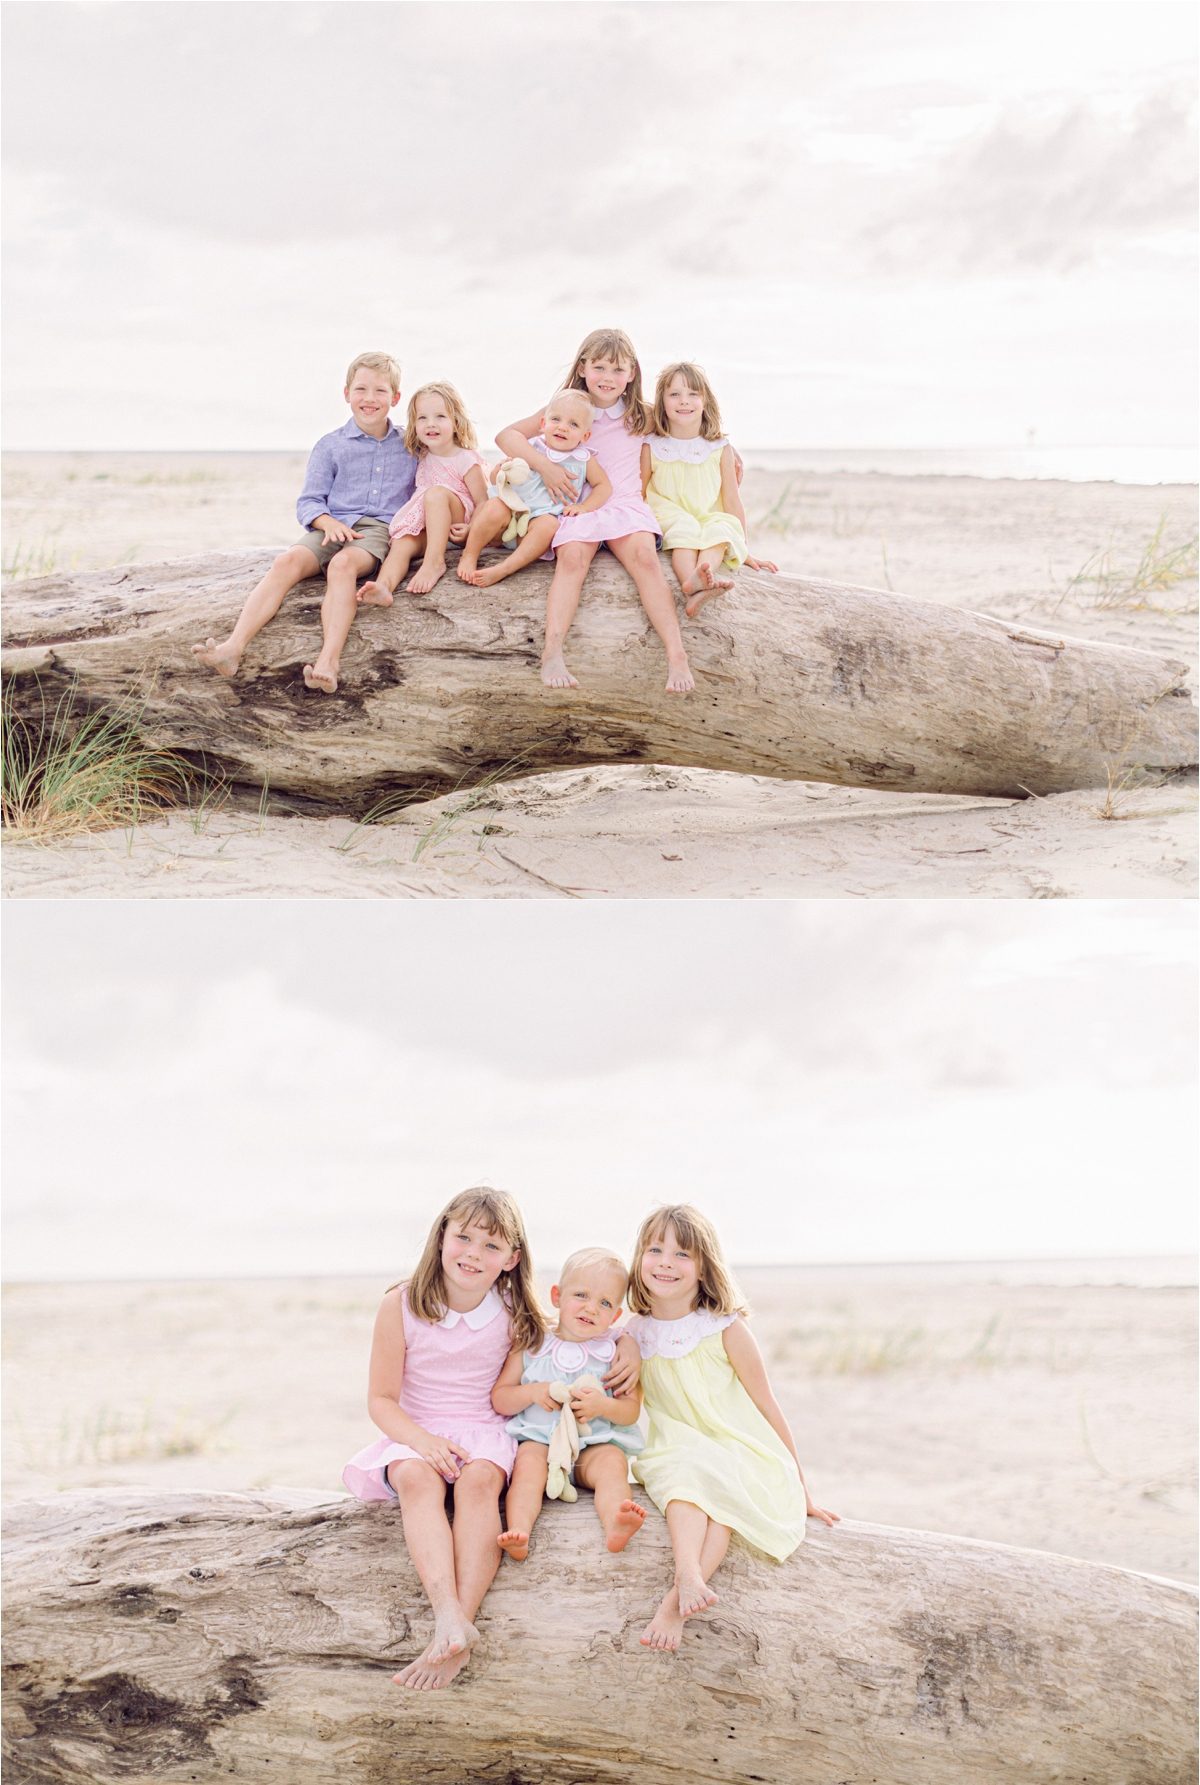 Cousins Summer family photos at beach at Bald Head Island, NC